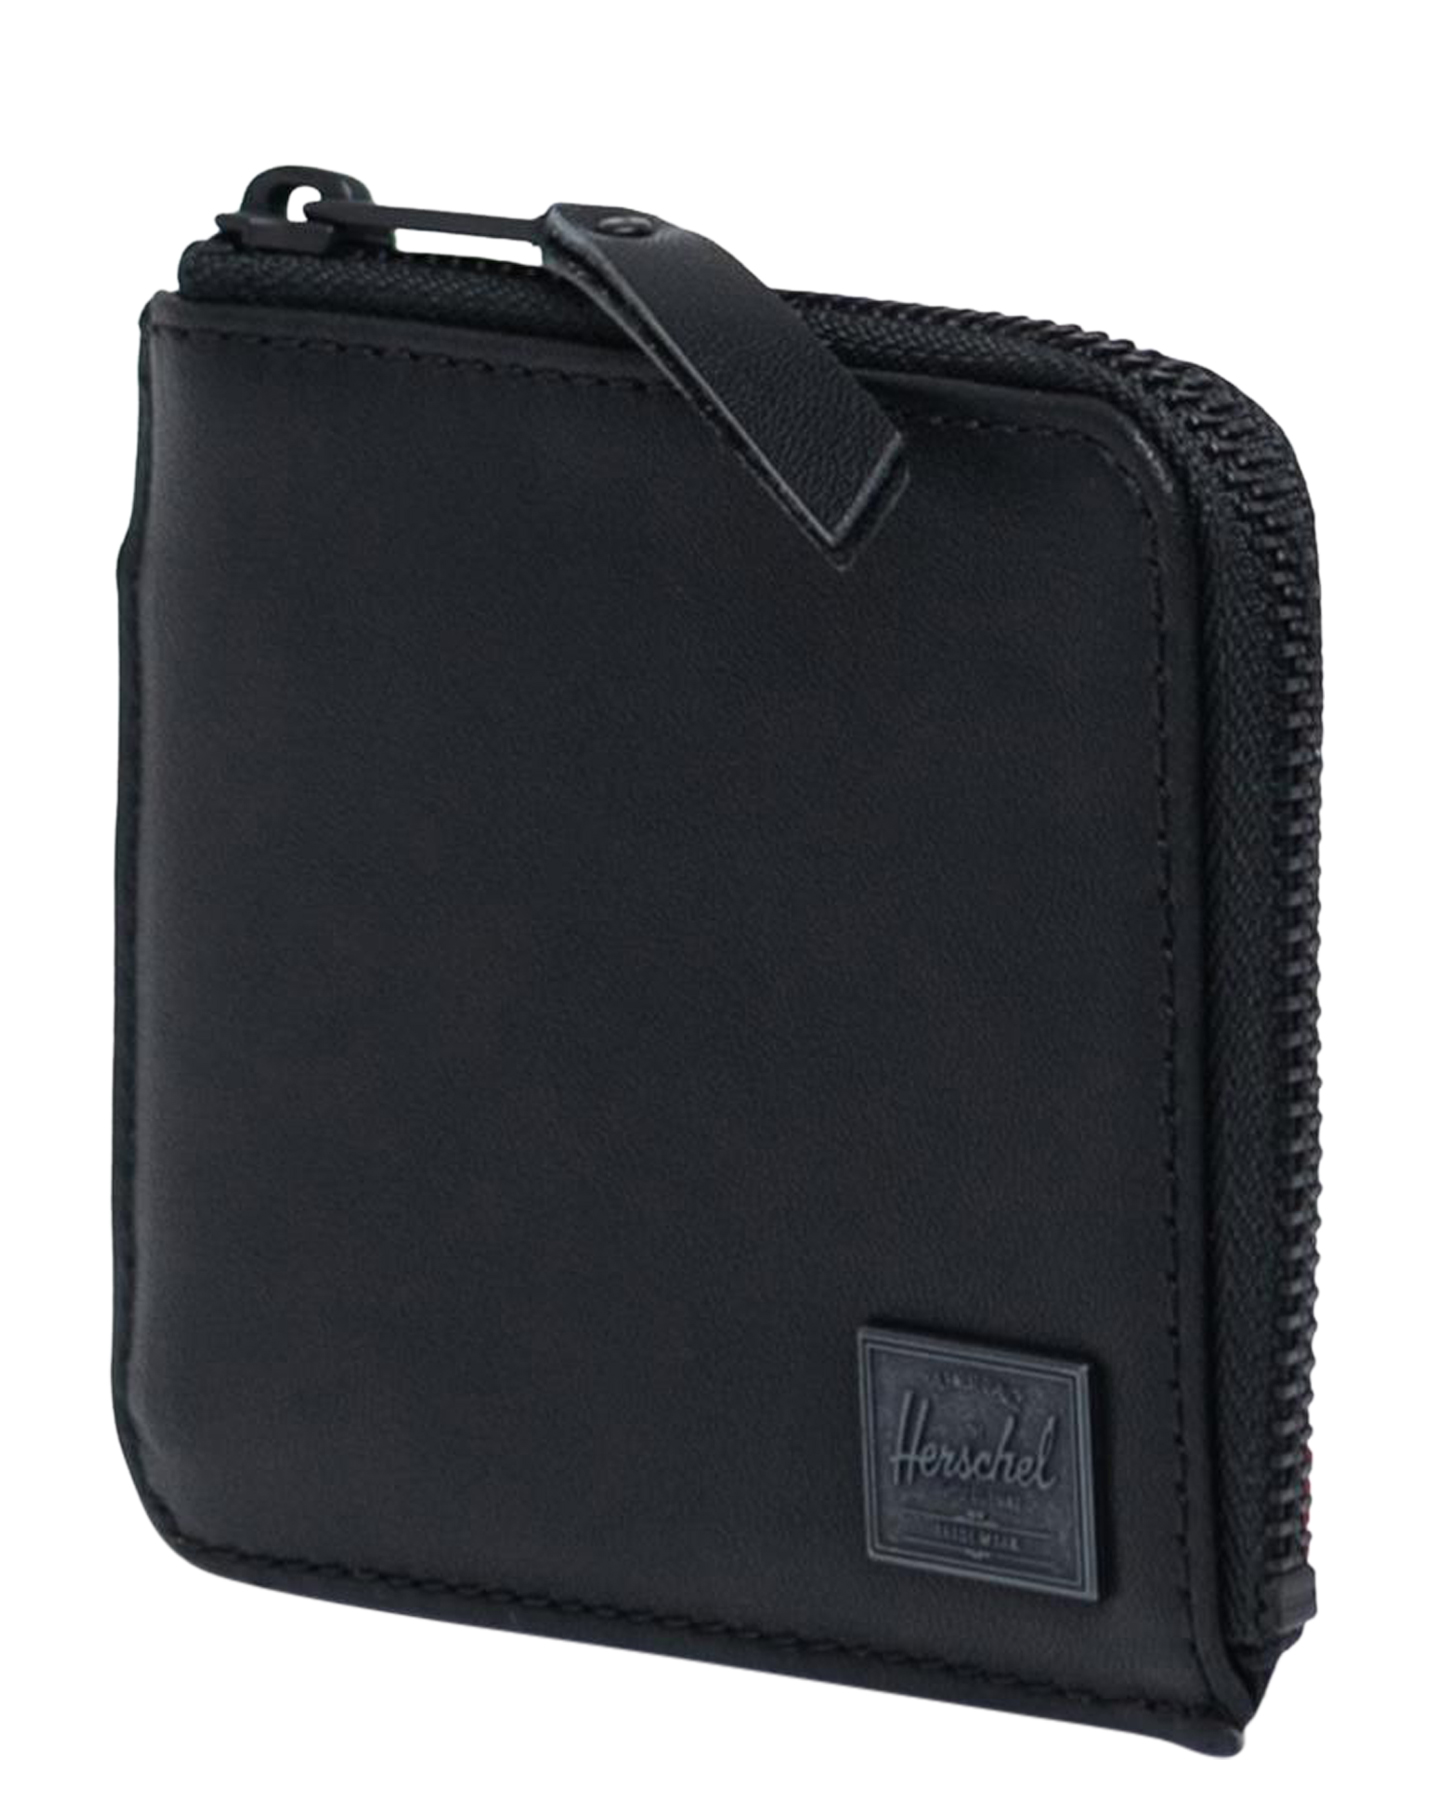 Herschel Supply Co Jack Leather Rfid Wallet - Black | SurfStitch